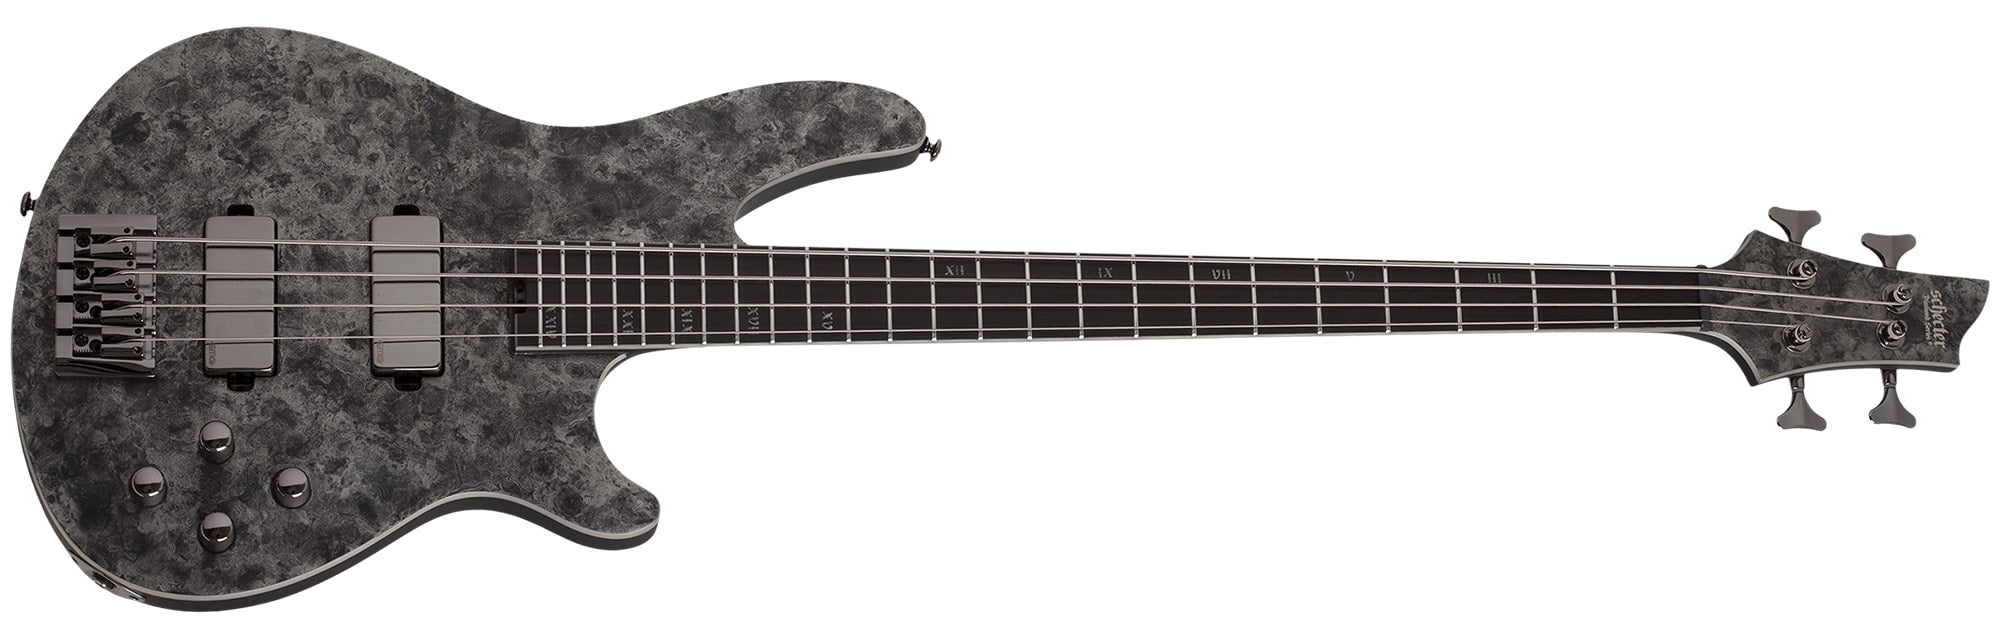 Schecter MVP C-4 Electric Bass, Black Reign 913-SHC